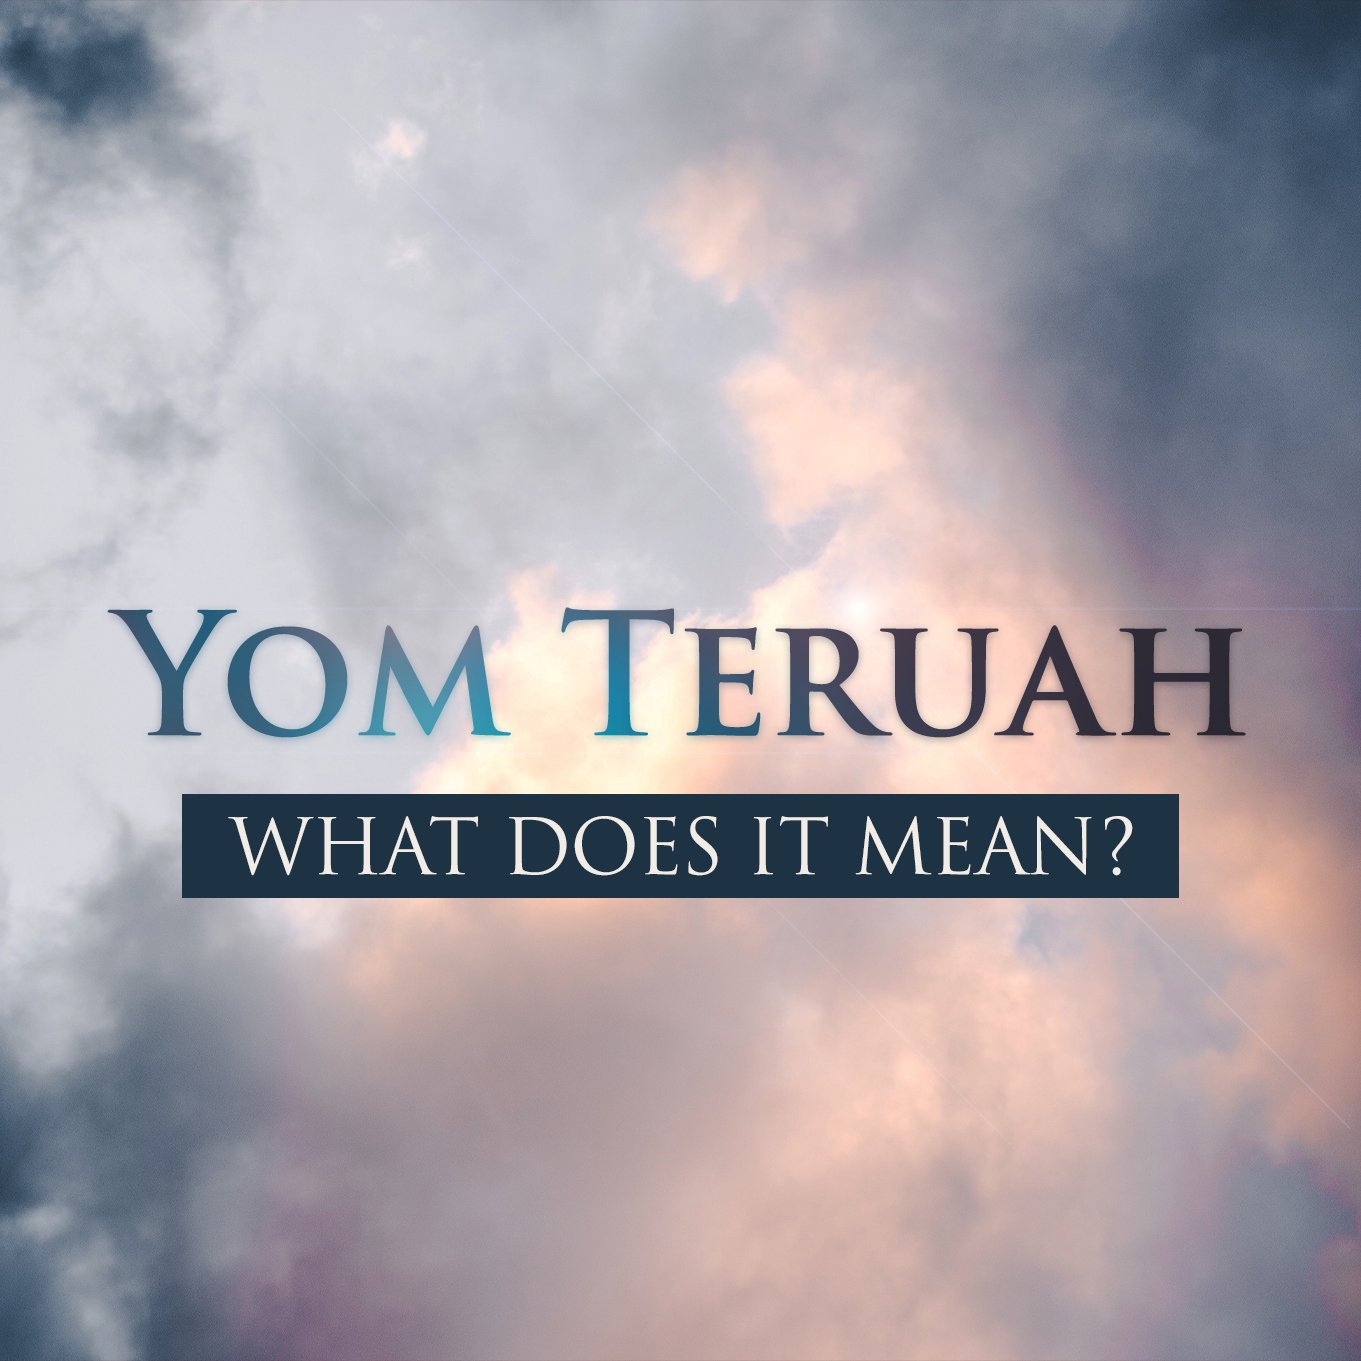 Yom Teru’ah: What Does It Mean?